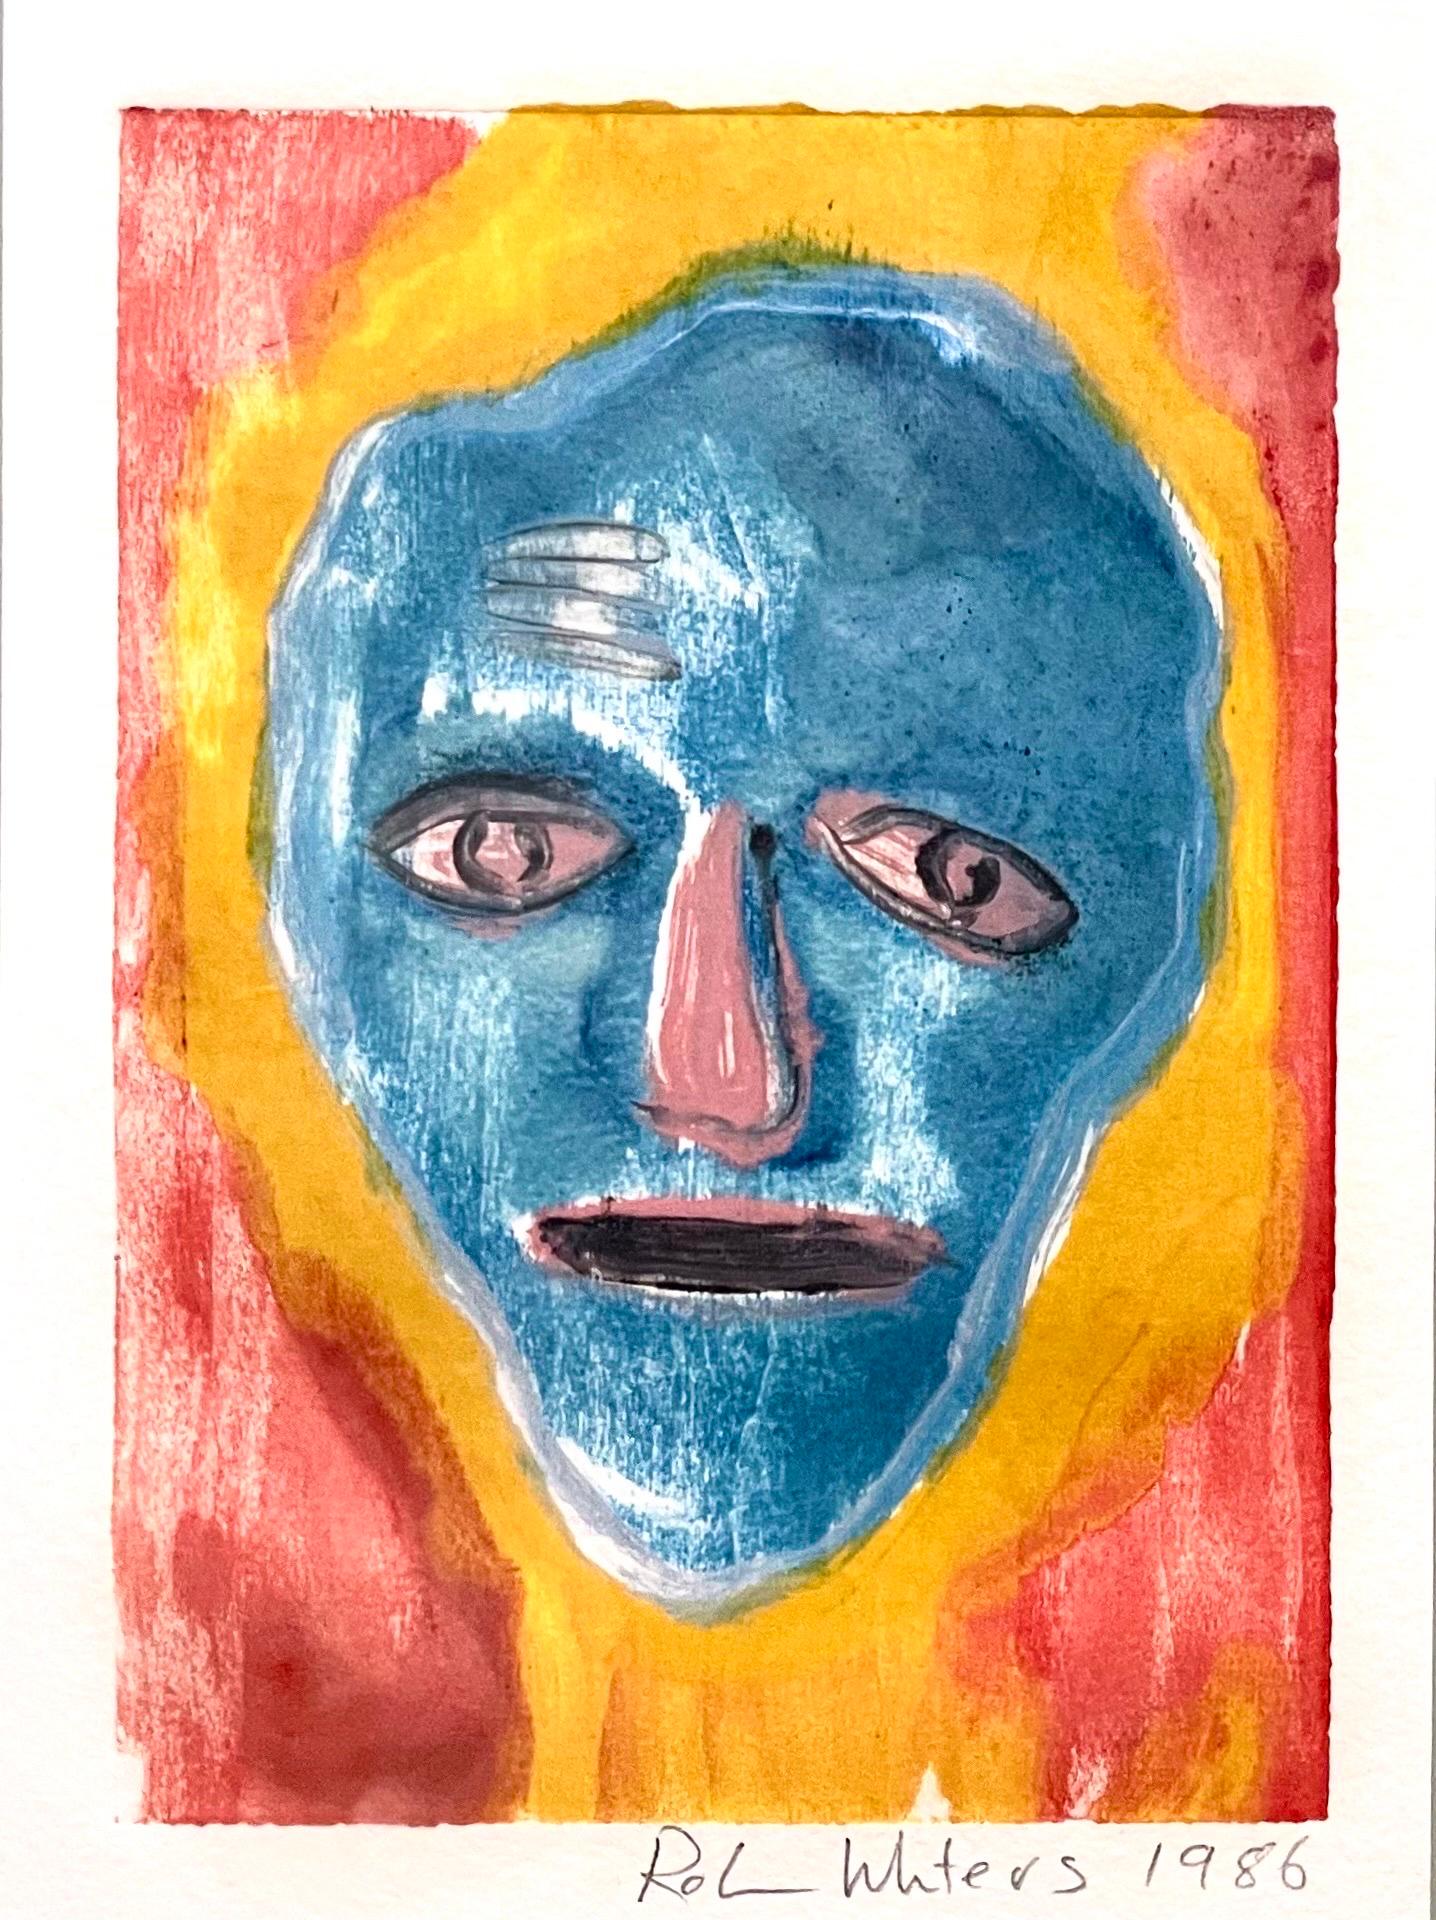 Robin Winters (Américain, né en 1950), 
Untitled (Red Face) from "Cherry Block Series" 1986, monotype, crayon signé et daté en bas à droite, plaque : 6 "h x 8.5 "l, total (avec cadre) : 22.25 "h x 18.25 "l. Provenance : Propriété d'une collection